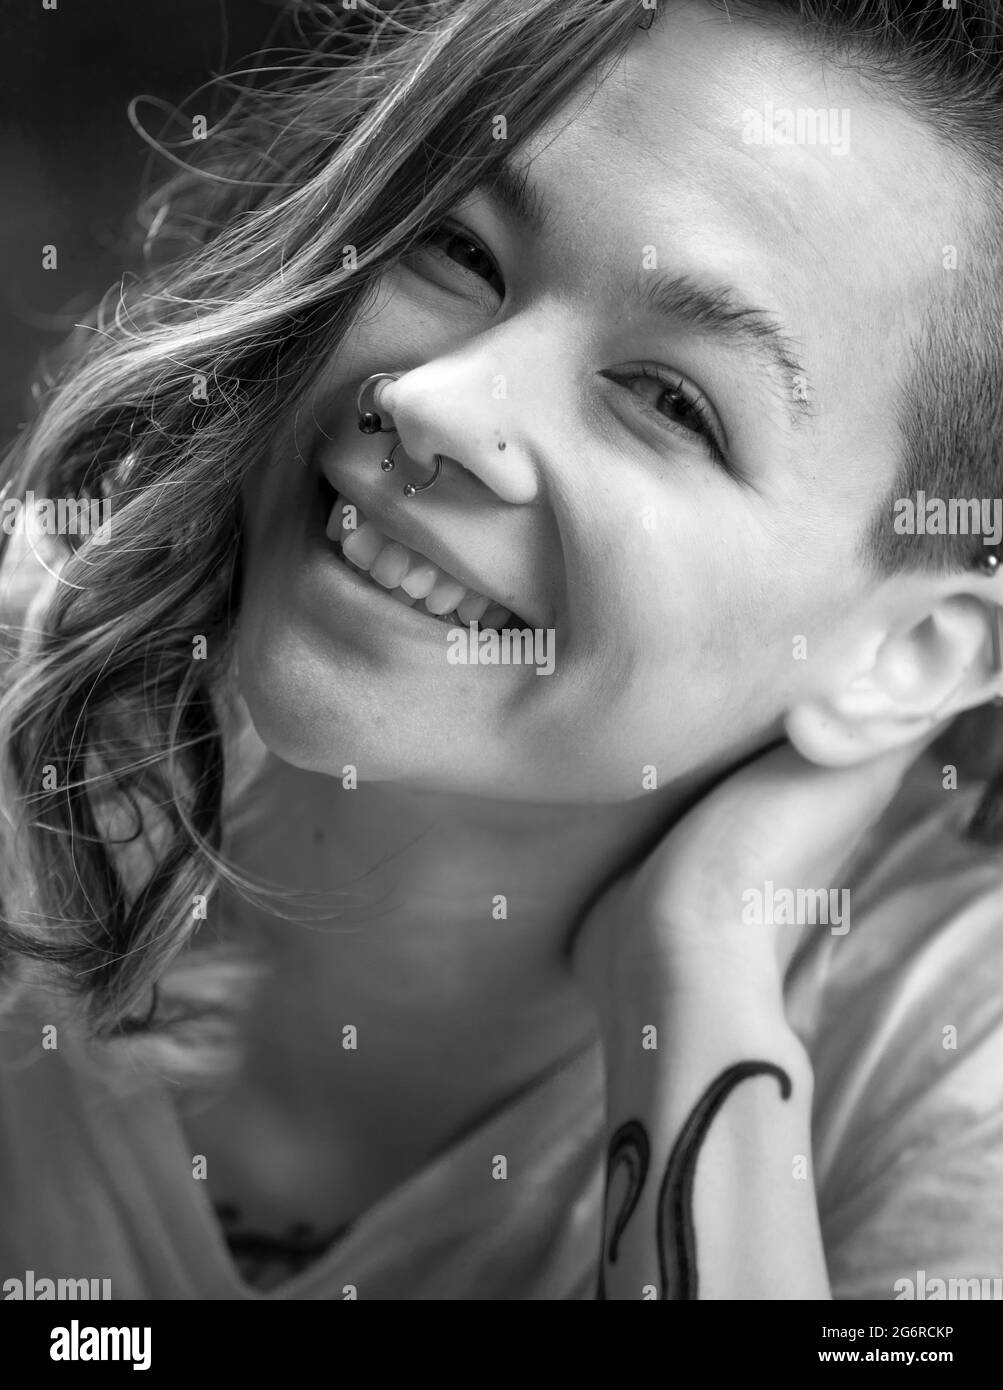 Un ritratto di una giovane donna che sorride e si appoggia la testa sulla mano mentre guarda la fotocamera. Foto Stock